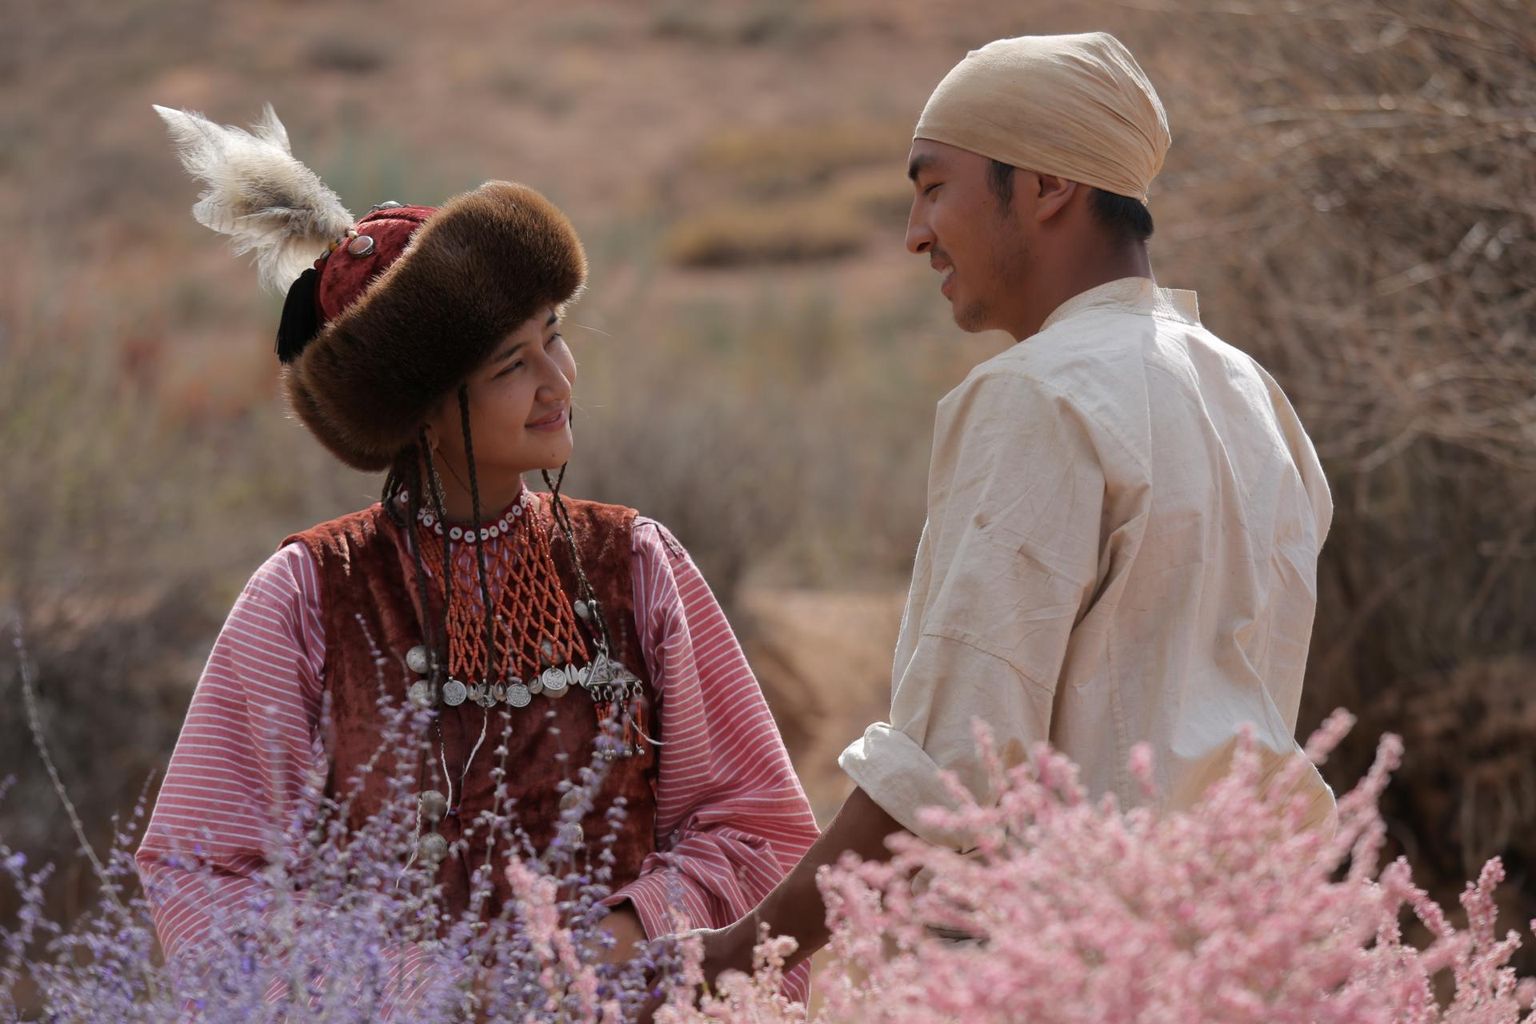 Kõrgõzstanis filmitud «Puu laul» (Kõrgõzstan-Venemaa 2018), kuulub debüütfilmide võistlusprogrammi ja linastub 28. novembril kell 17.15 Tasku keskuse Cinamonis.